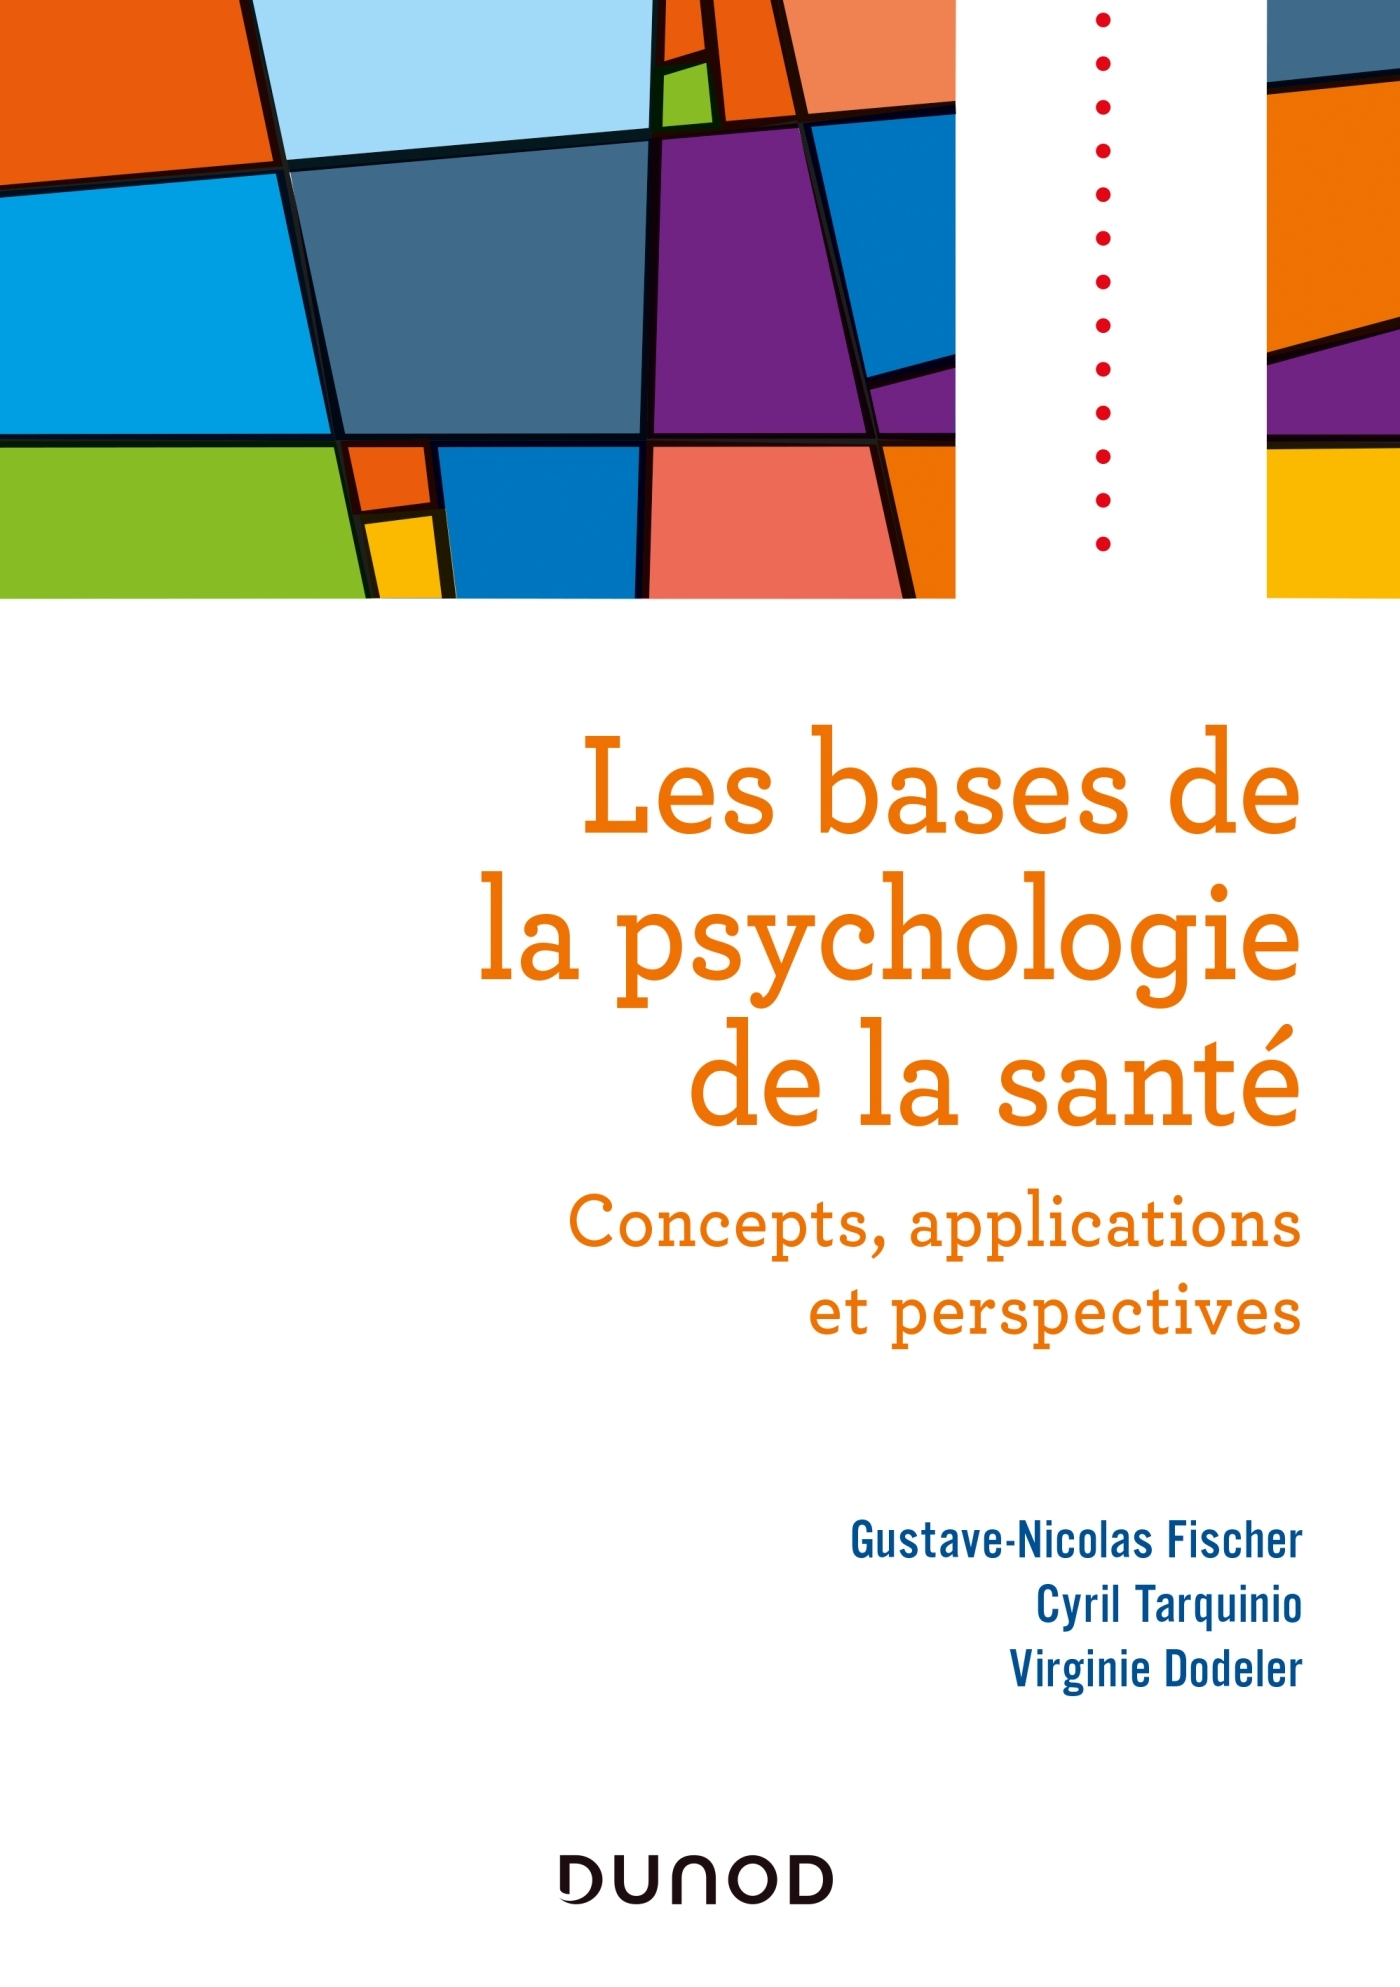 Les bases de la psychologie de la santé - Concepts, applications et perspectives, Concepts, applications et perspectives (9782100793204-front-cover)